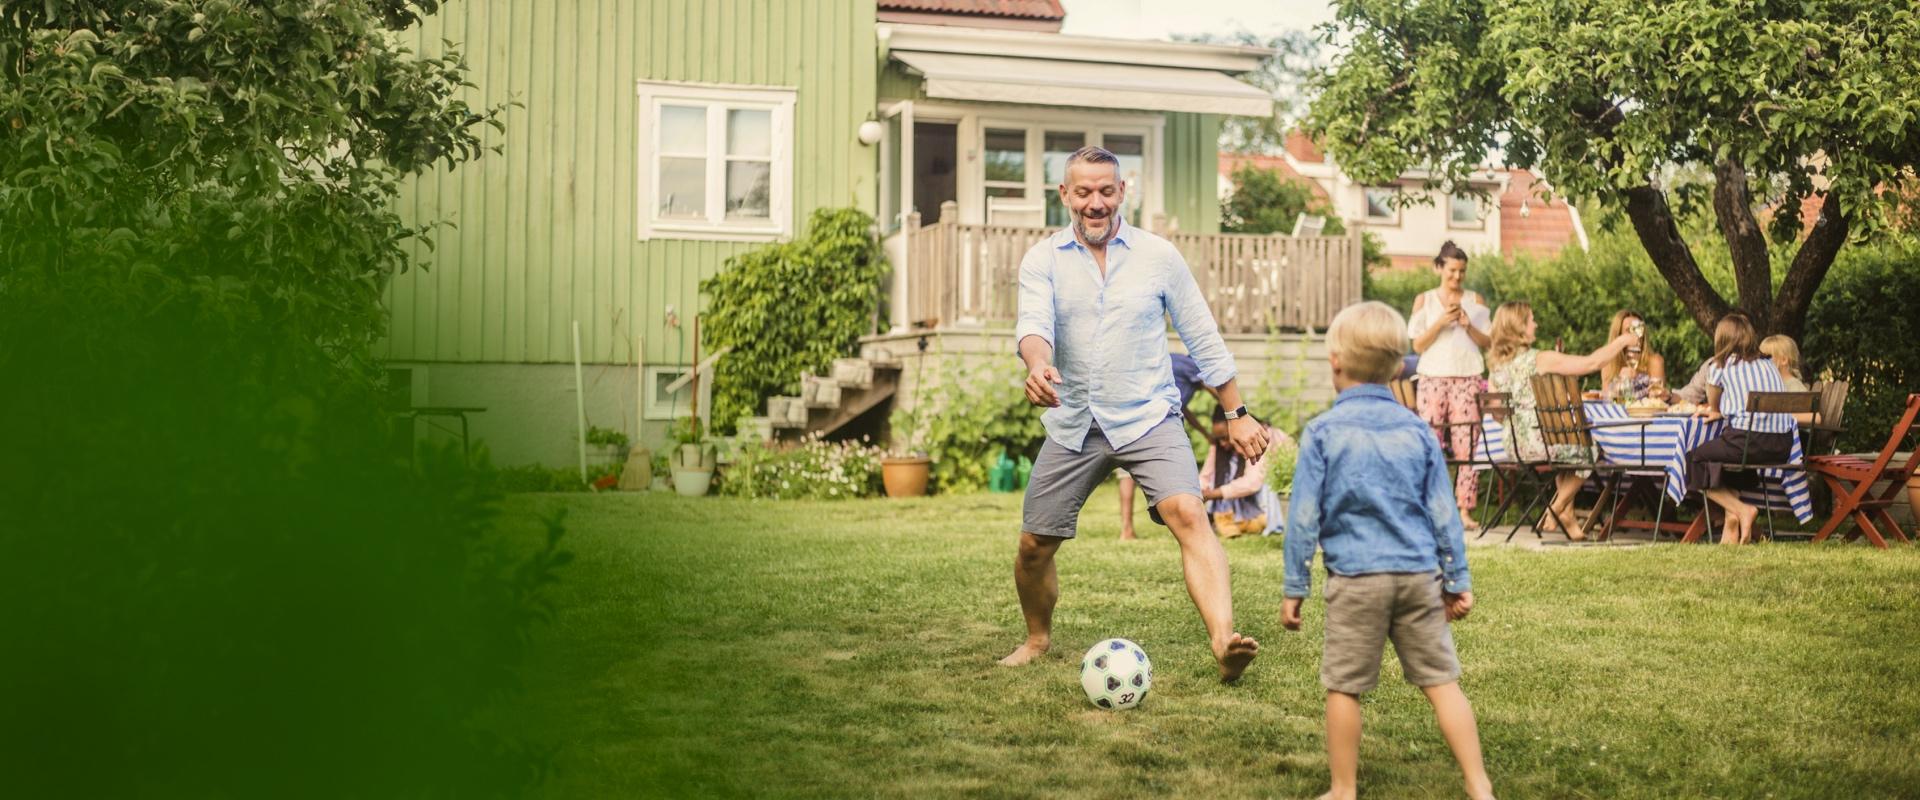 En pappa spelar fotboll med sin son i trädgården